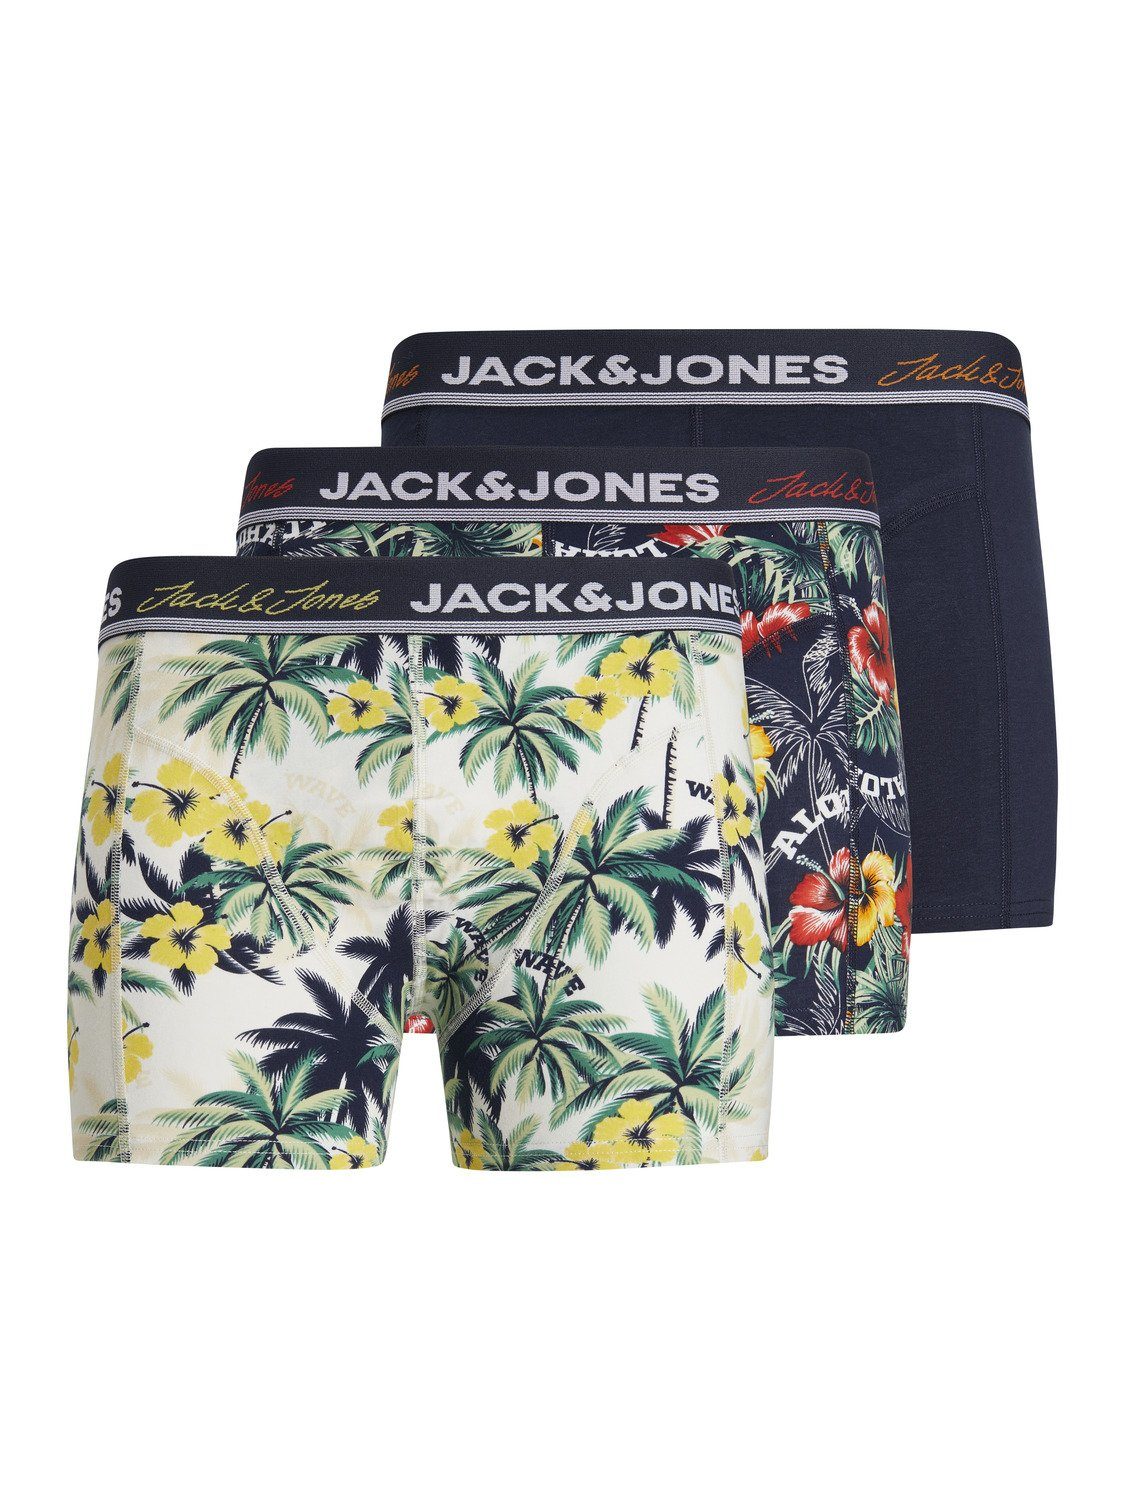 Jones Pack 3er Boxershorts 12209967 & JONES JACVENICE Unterhose & JACK Jack Herren Boxershorts